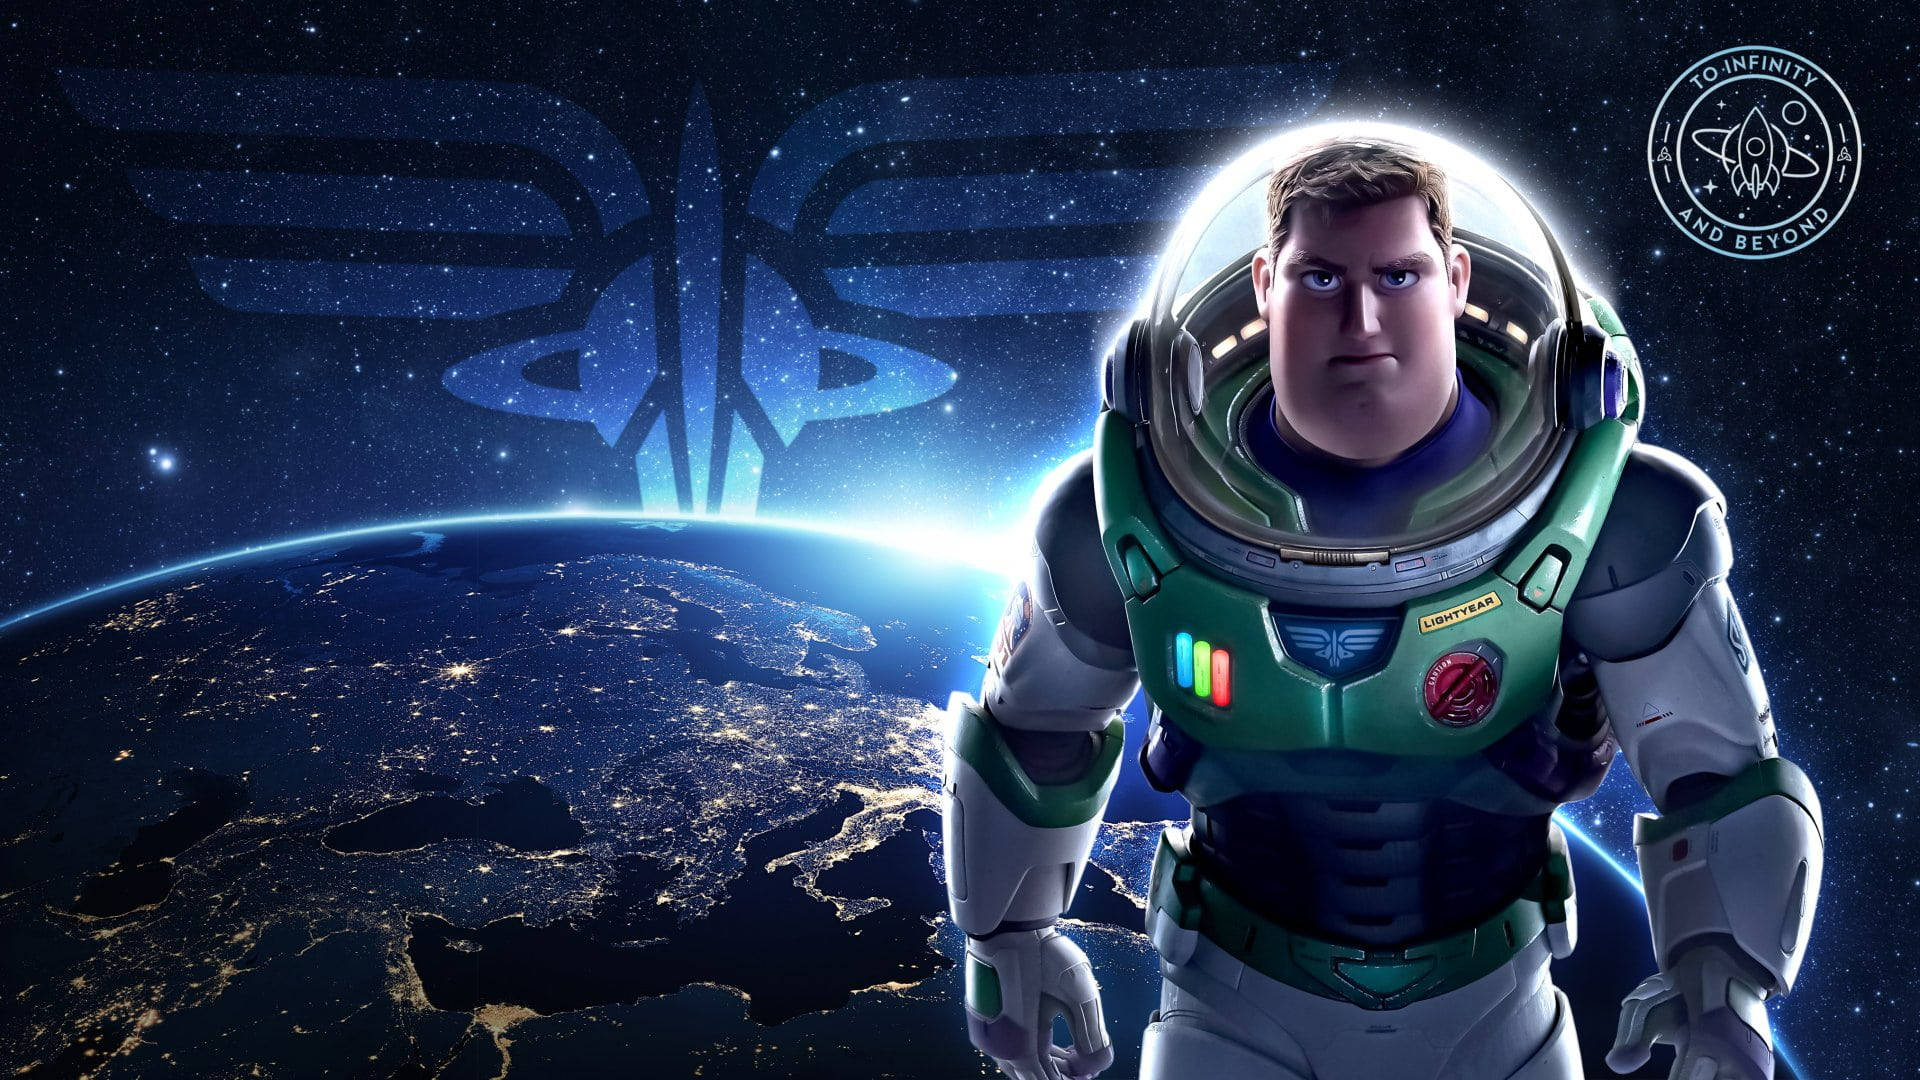 Buzz Lightyear Of Star Command 3d Art Version Wallpaper